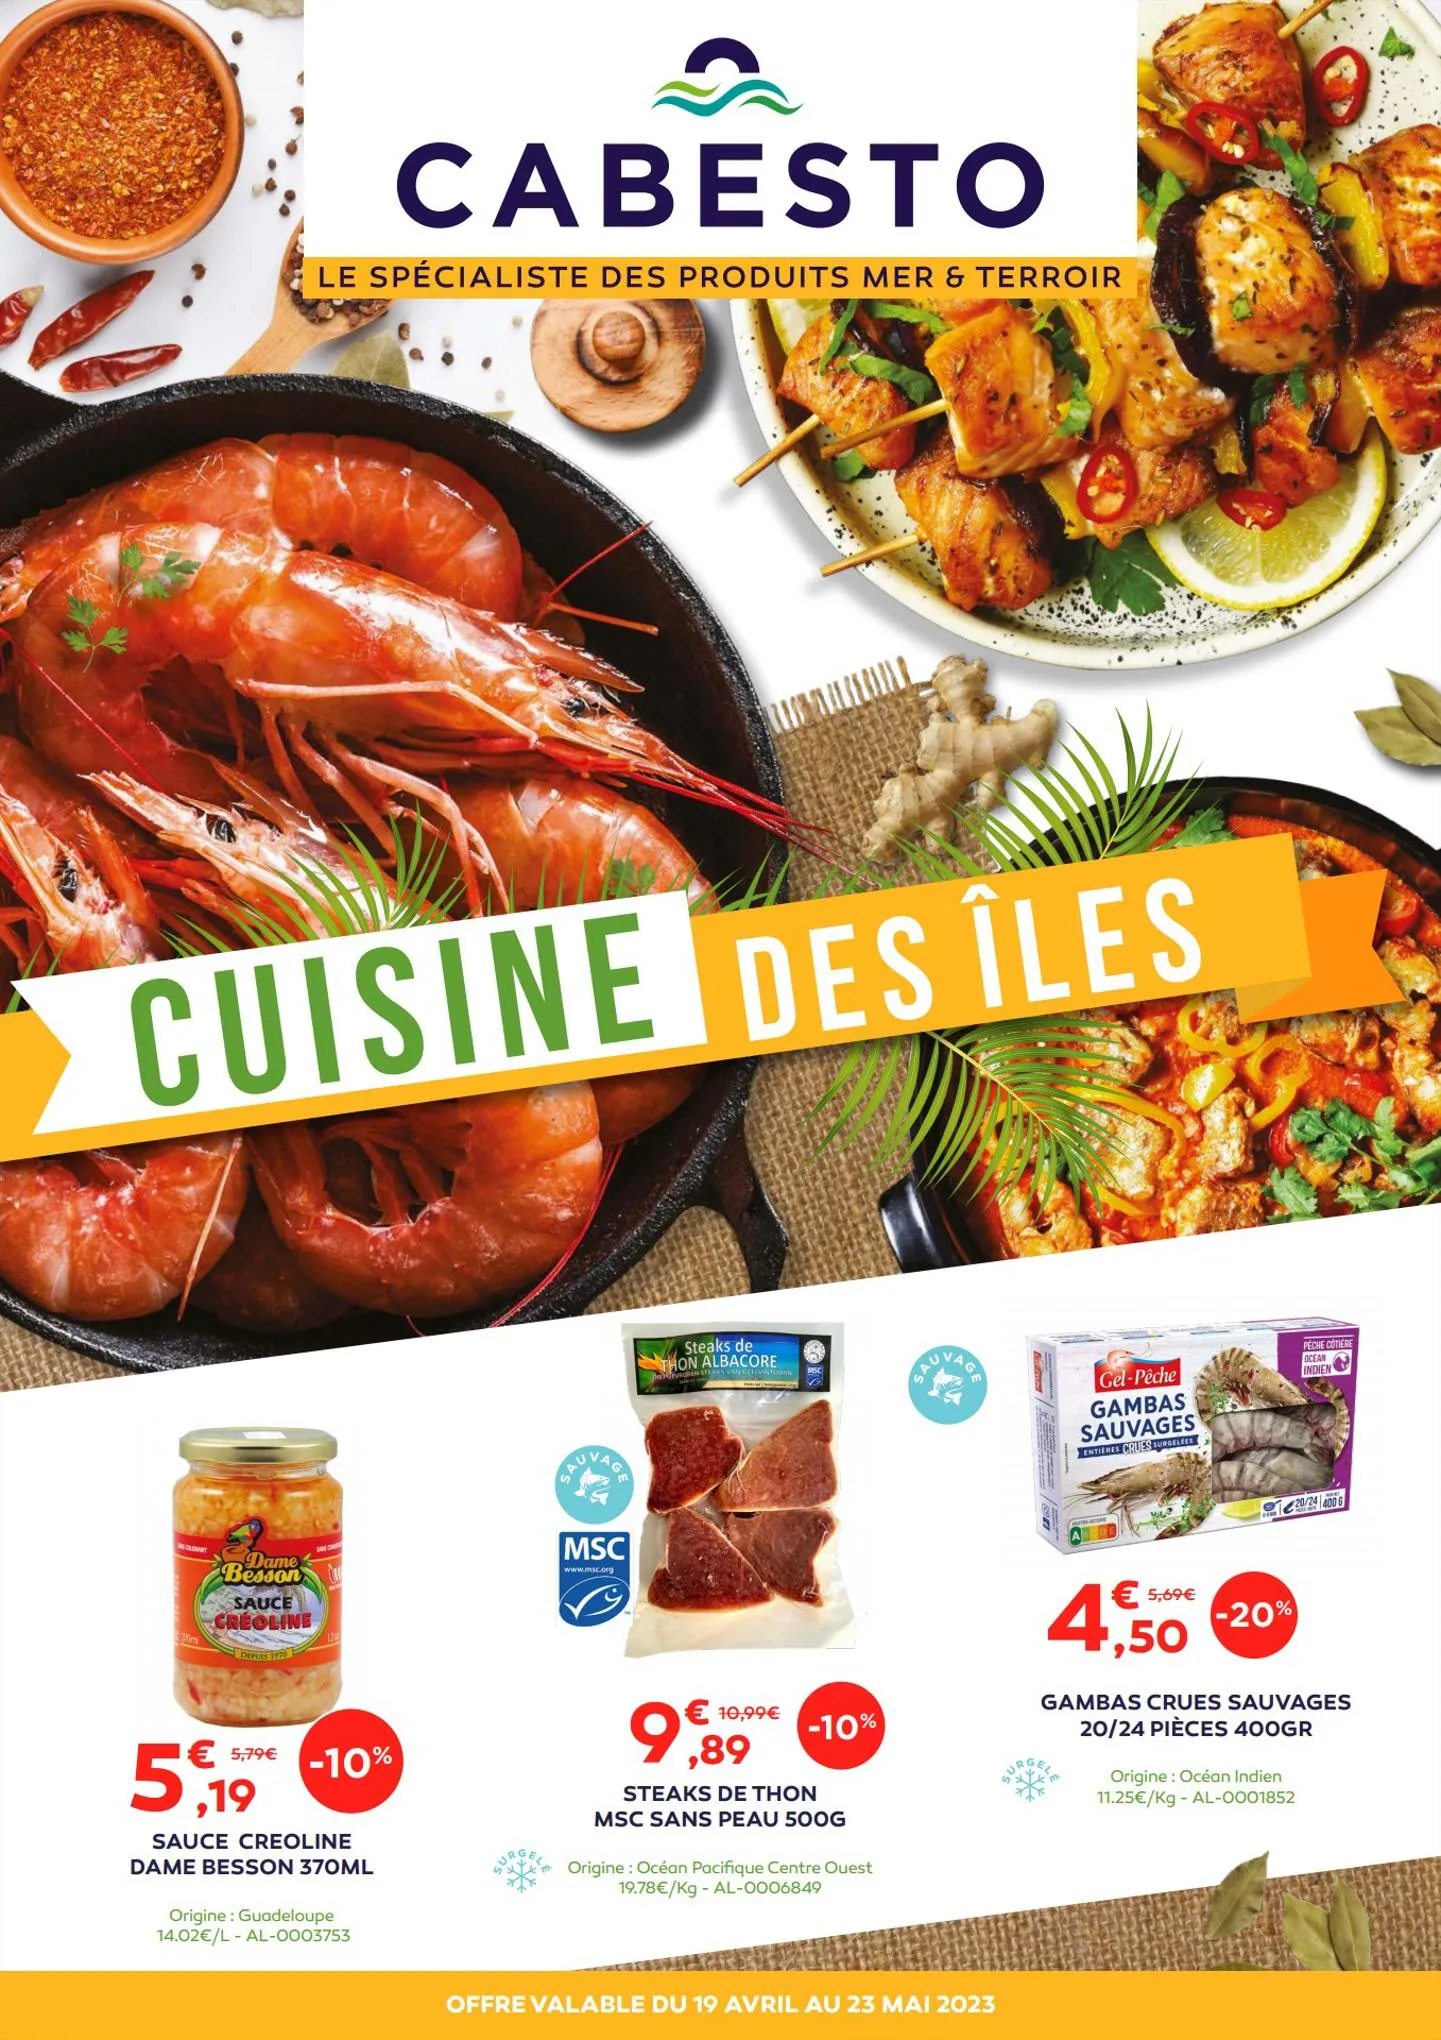 Catalogue Catalogue Alimentation Cuisine des îles, page 00001